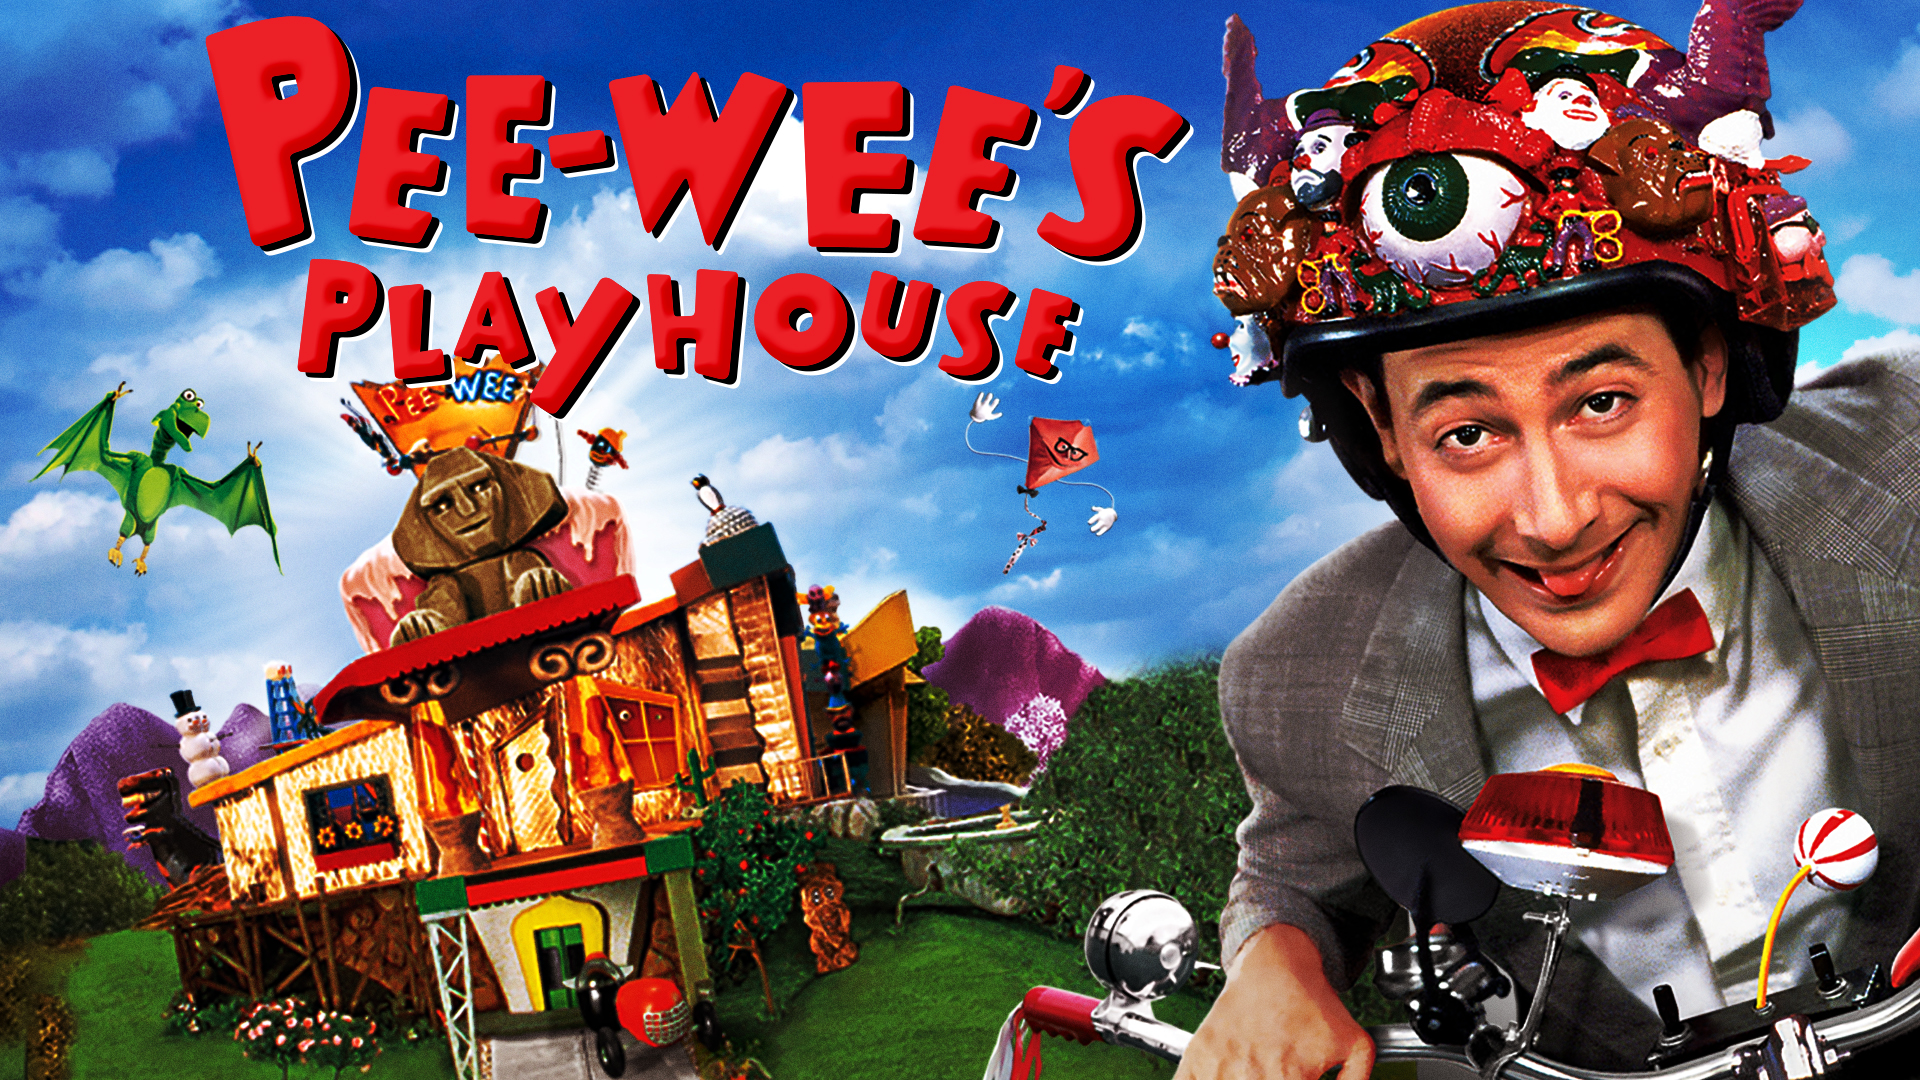 Pee-wee's Playhouse